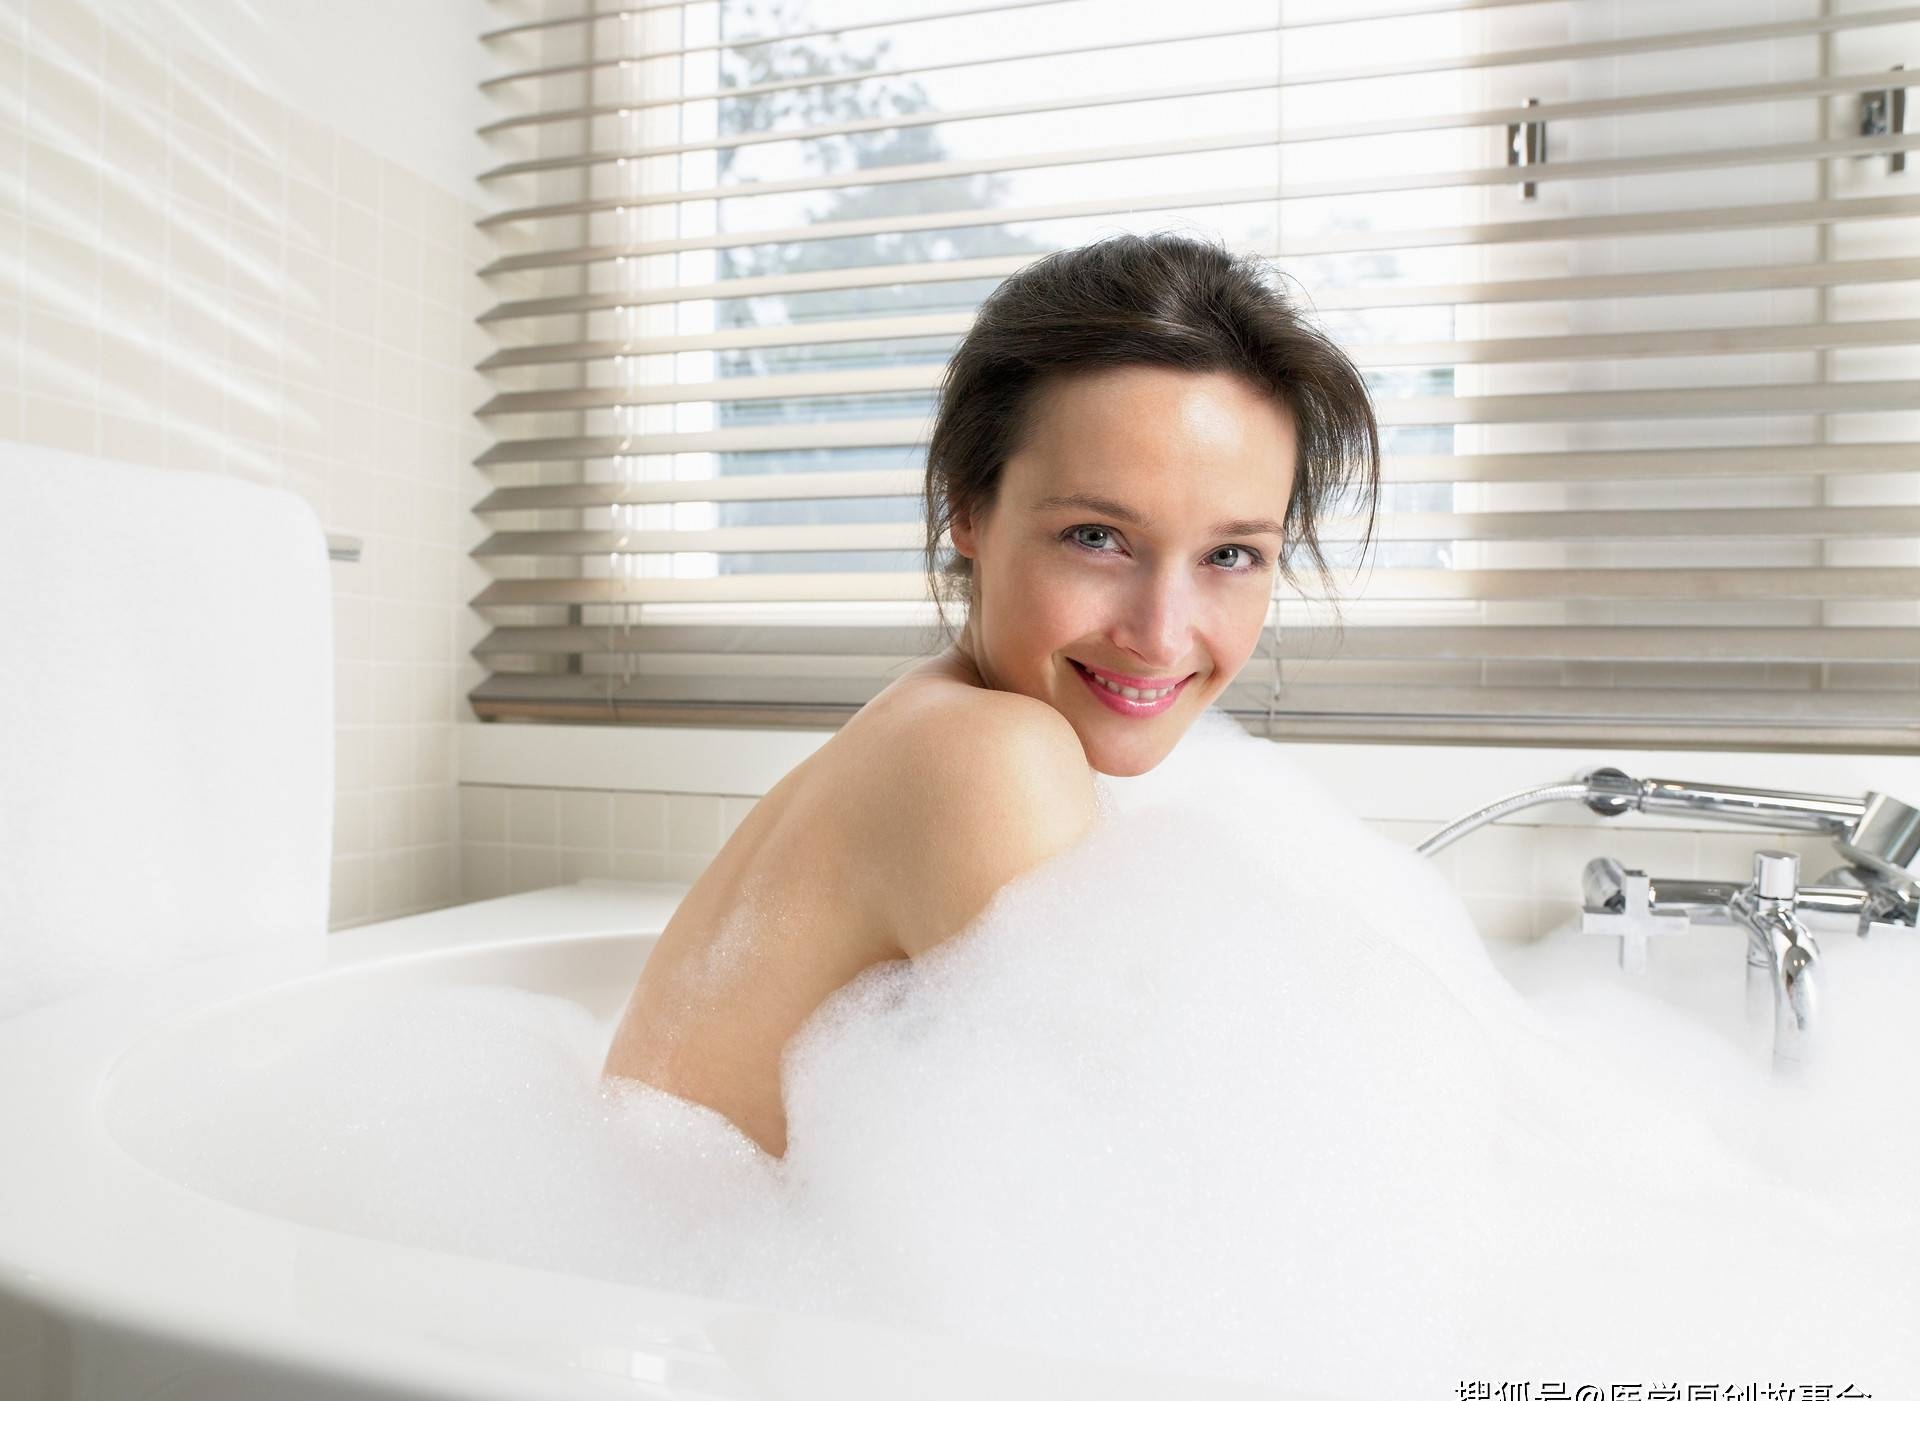 年轻女人正在洗澡 库存照片. 图片 包括有 构成, 干净, 赤裸, 乐趣, 健康, 头发, 相当, 休闲 - 244913976